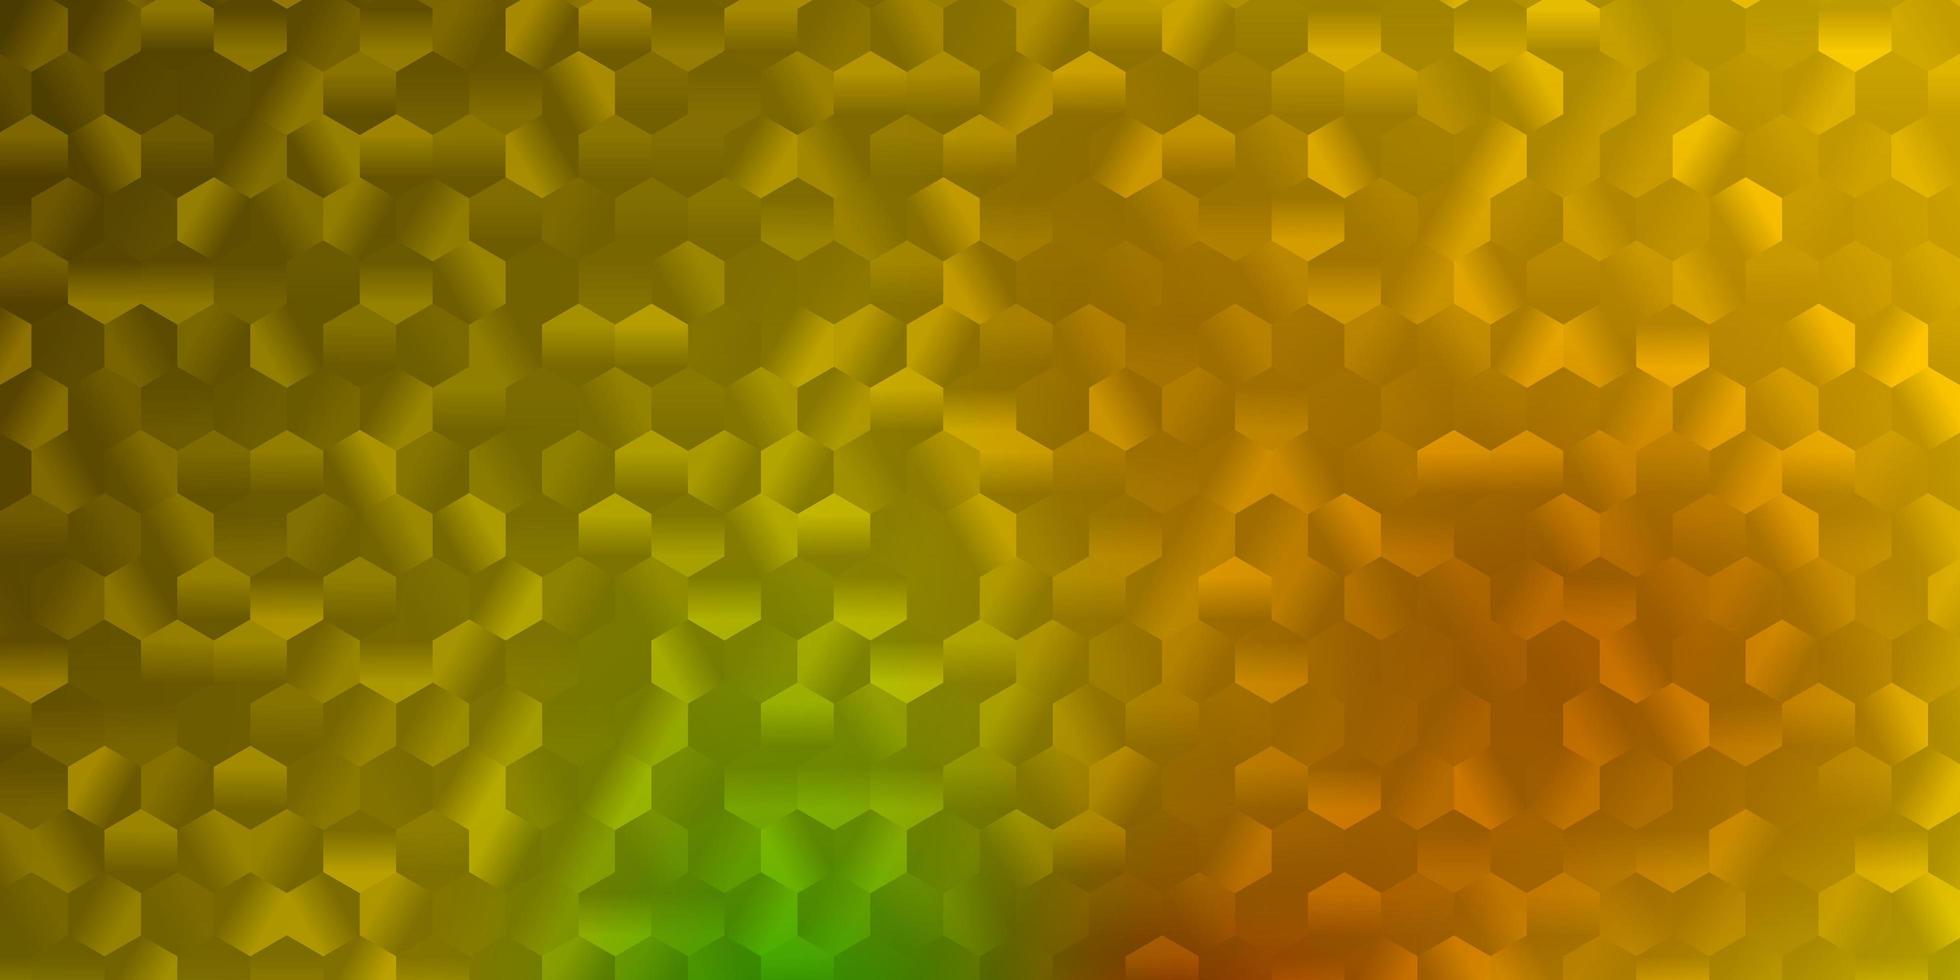 fond de vecteur vert foncé, jaune avec des formes hexagonales.